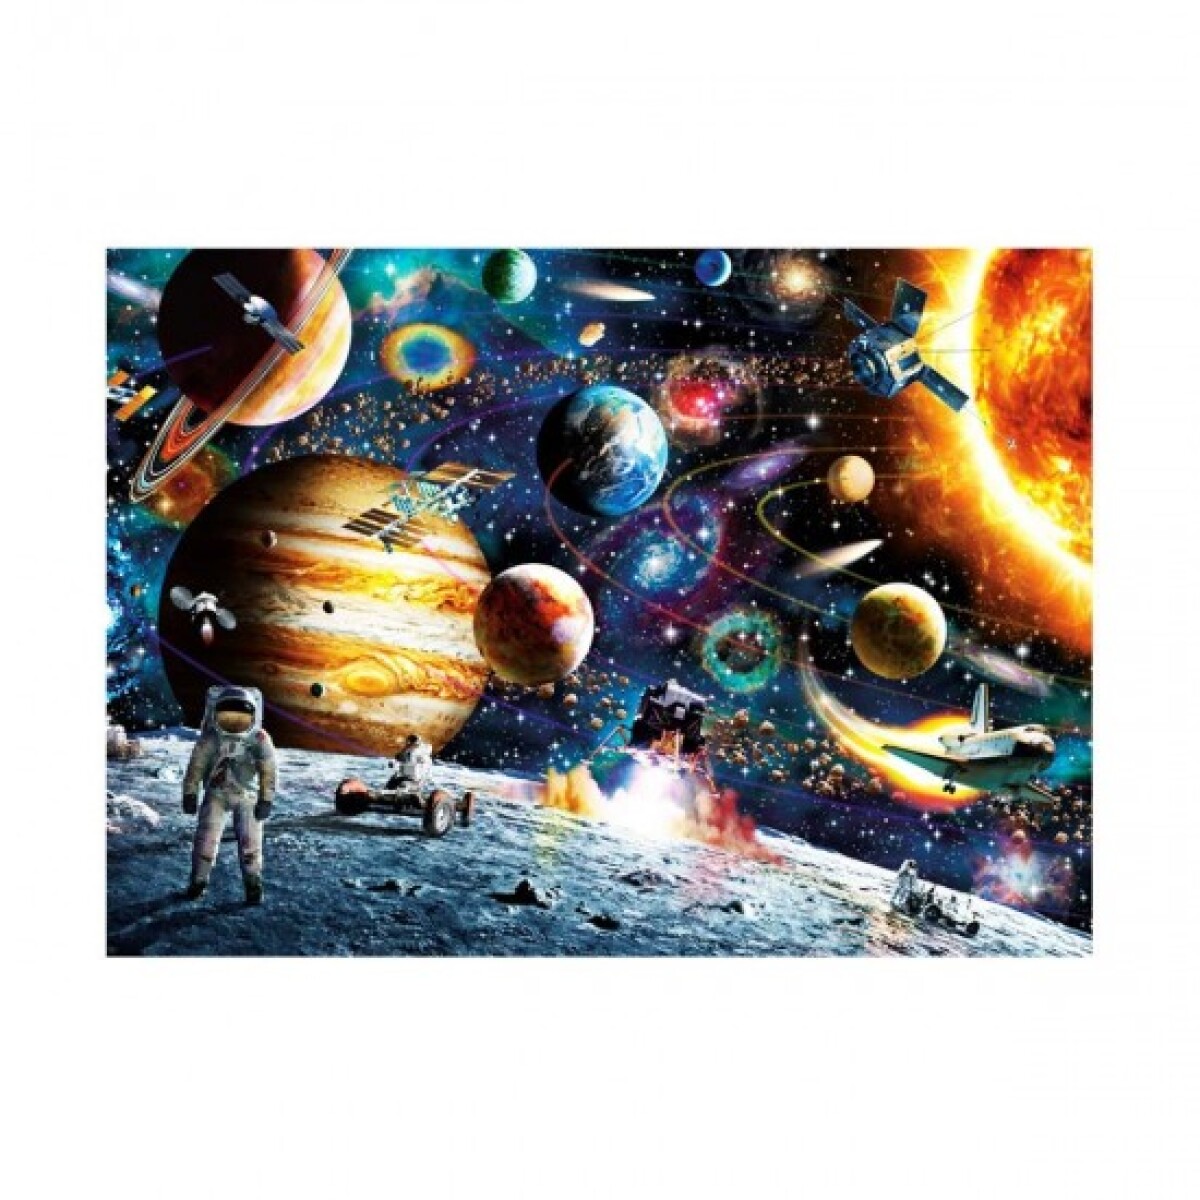 Puzzle Rompecabezas Espacio Vía Láctea 1000 Piezas - 001 